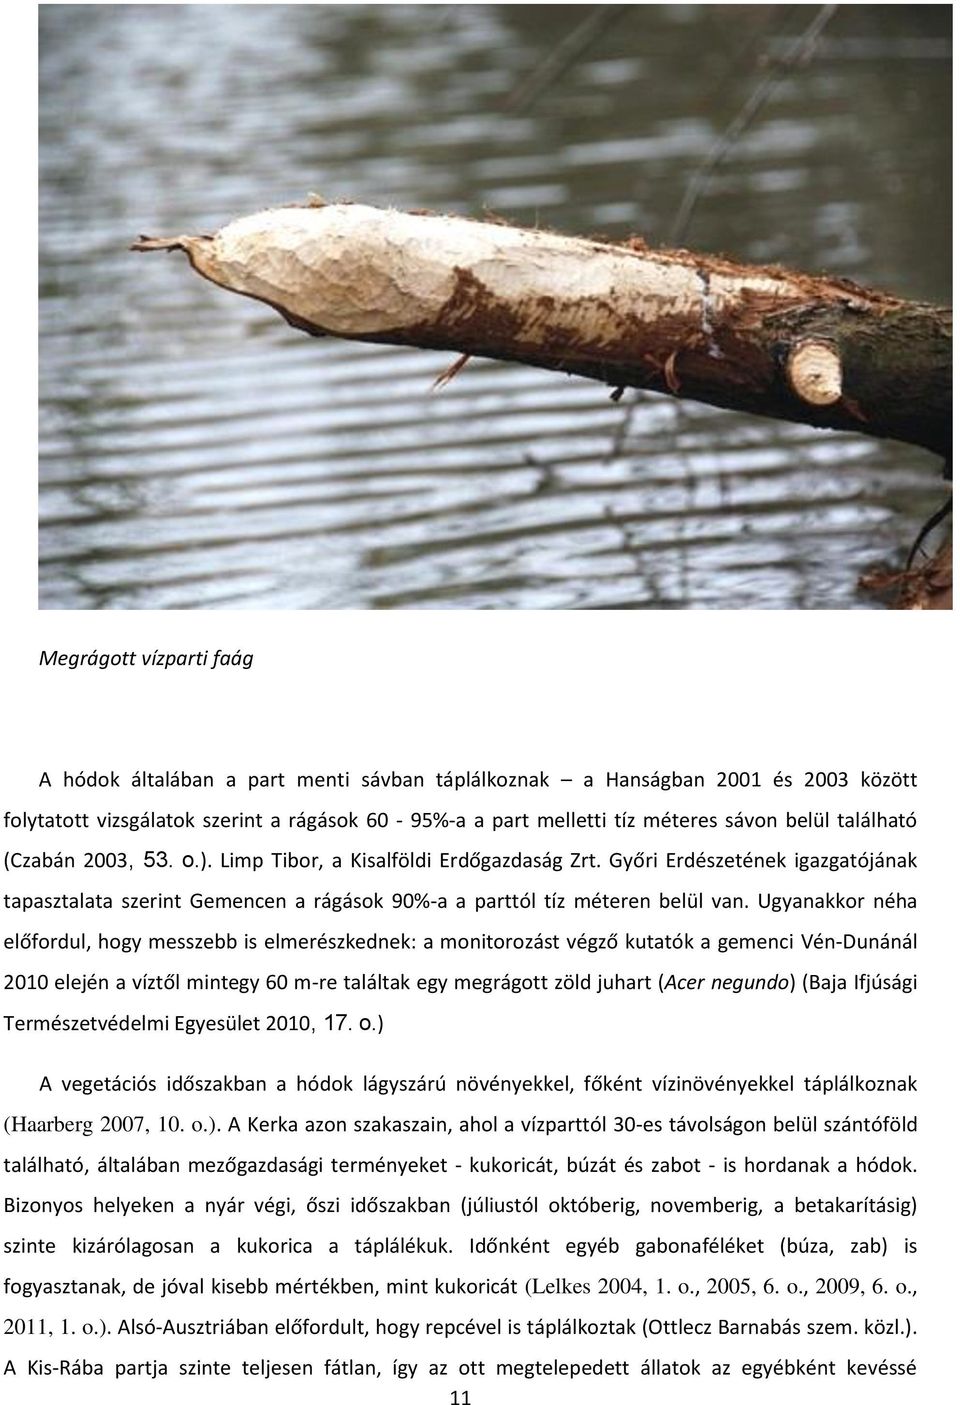 Ugyanakkor néha előfordul, hogy messzebb is elmerészkednek: a monitorozást végző kutatók a gemenci Vén-Dunánál 2010 elején a víztől mintegy 60 m-re találtak egy megrágott zöld juhart (Acer negundo)